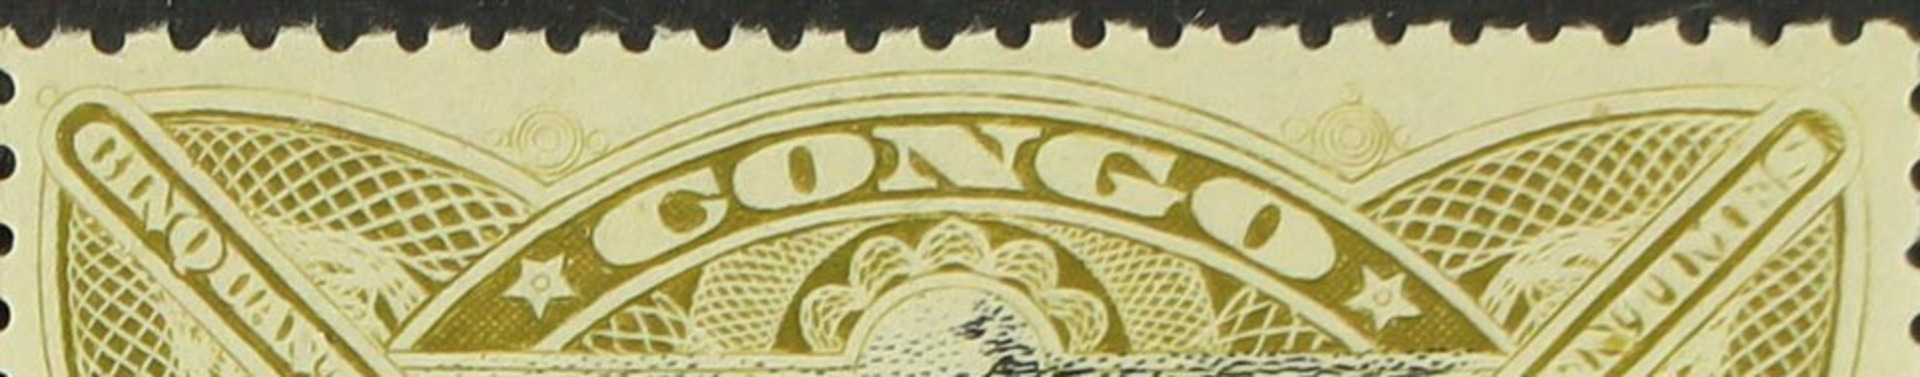 Belgian Colonies stamps